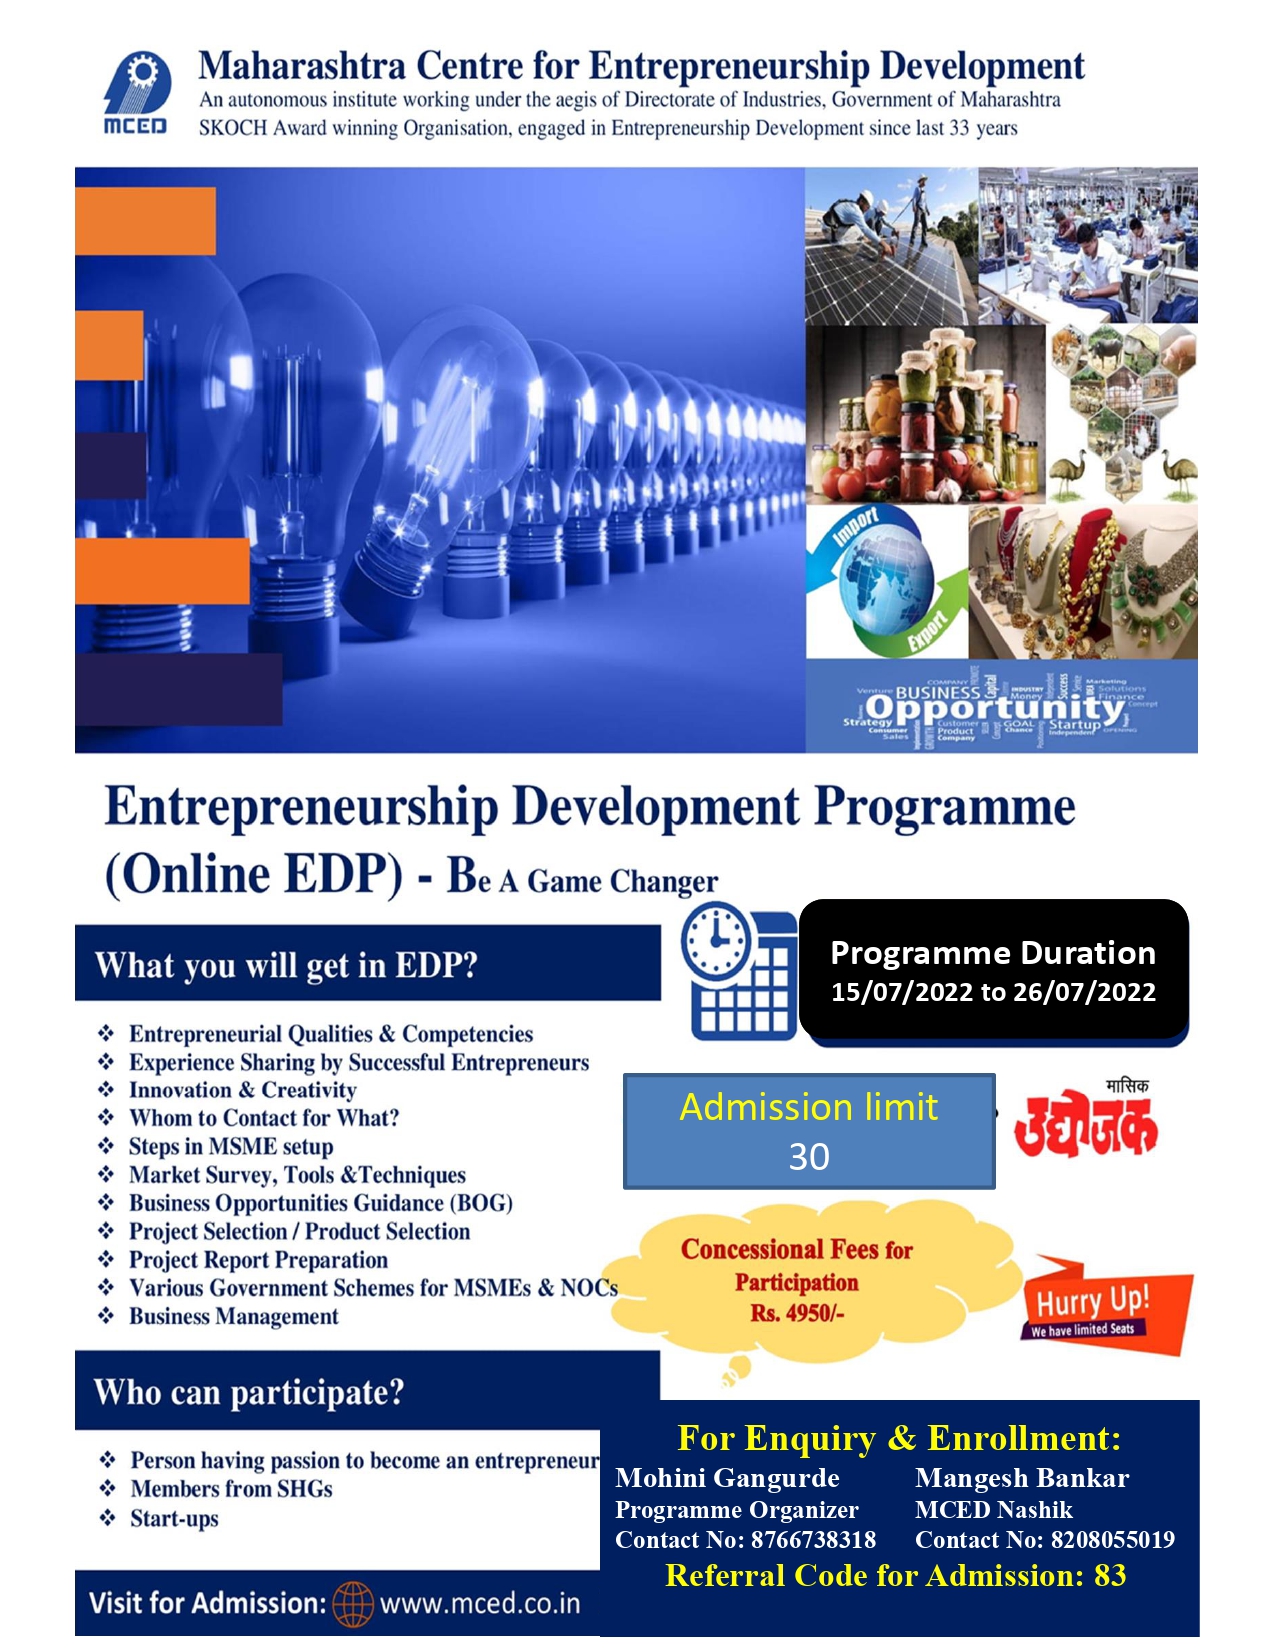 Online-Entrepreneurship Development Programme